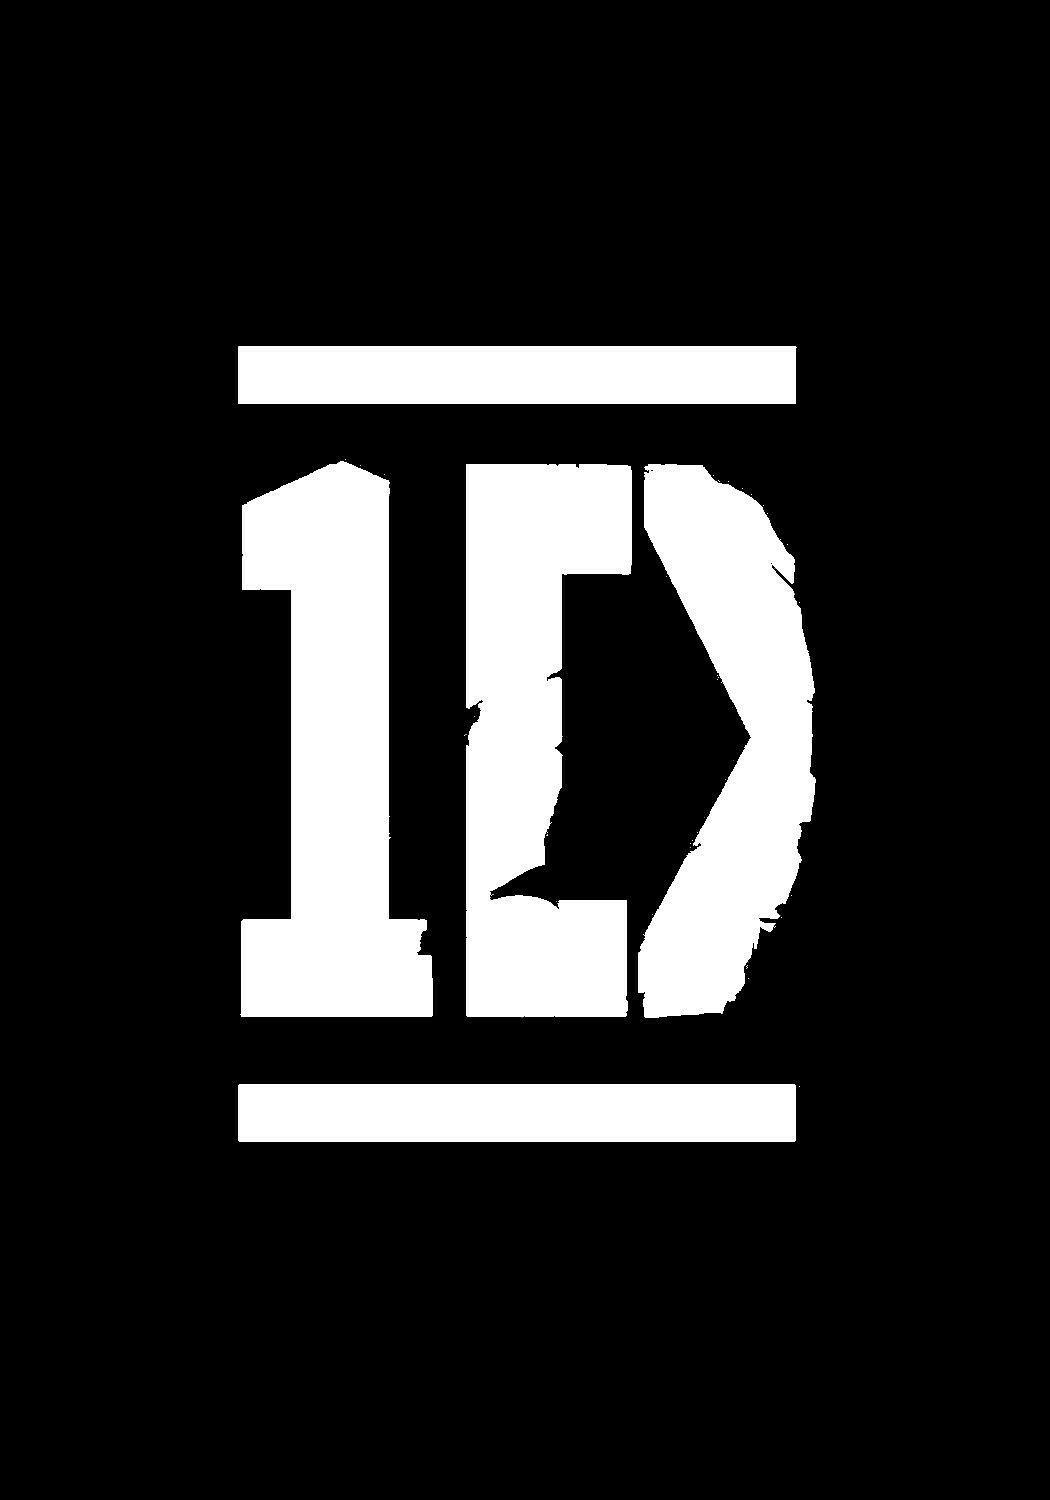 One Direction Logo - ONE DIRECTION logo | ONE DIRECTION LOGO | One Direction, One ...